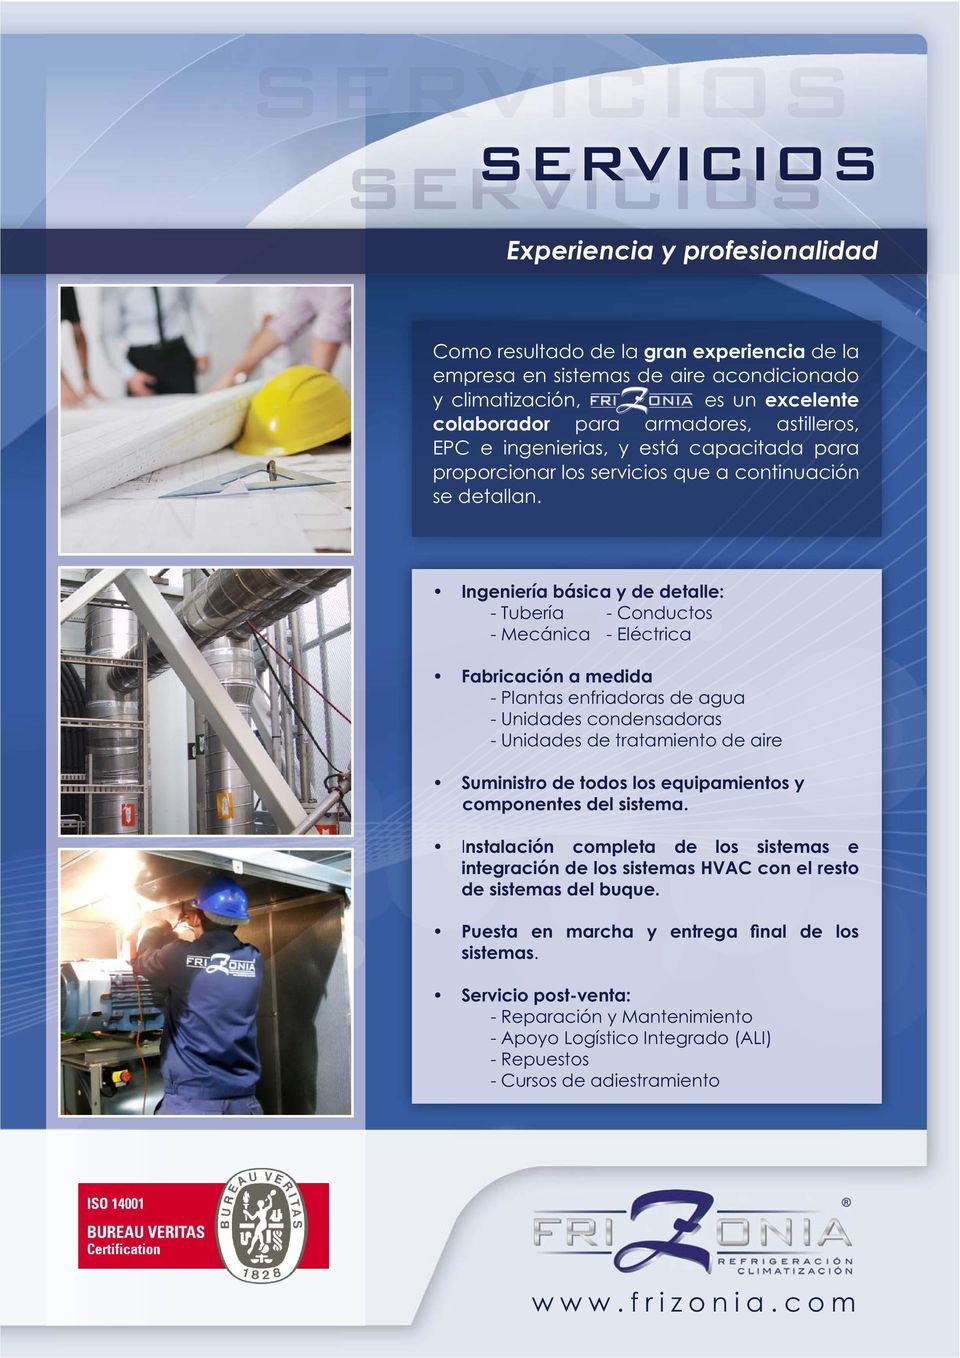 Ingeniería básica y de detalle: - Tubería - Conductos - Mecánica - Eléctrica Fabricación a medida - Plantas enfriadoras de agua - Unidades condensadoras - Unidades de tratamiento de aire Suministro